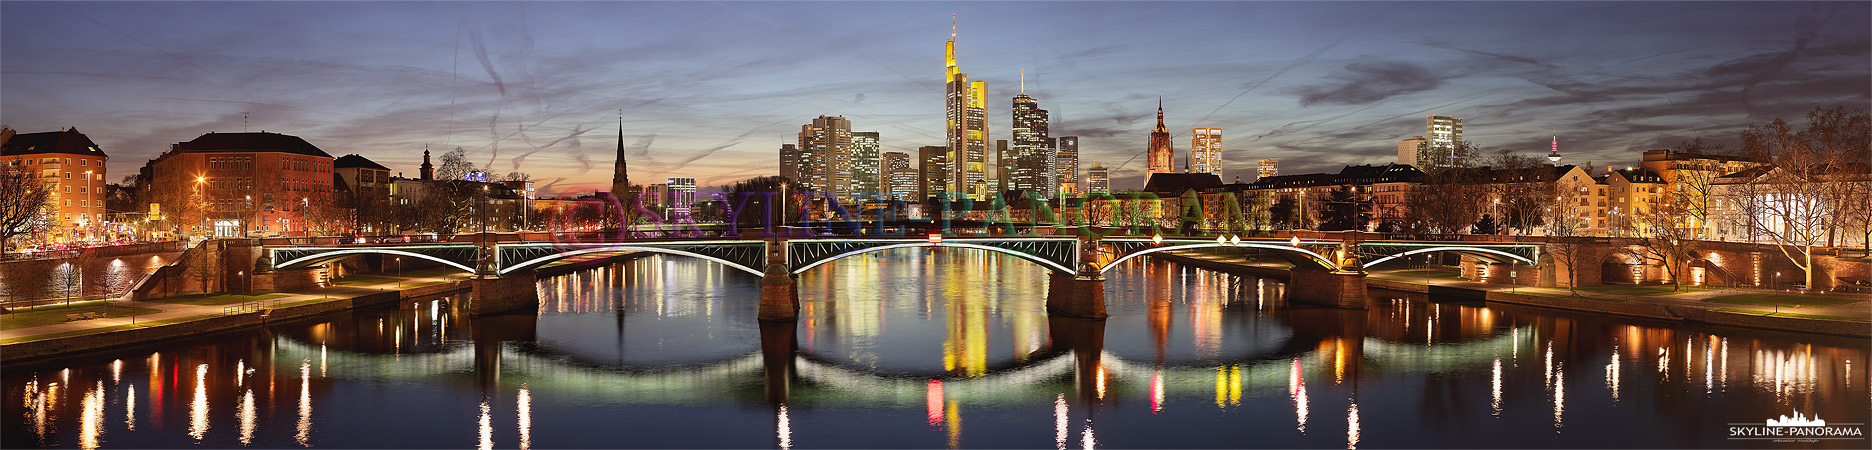 Frankfurt Skyline (p_00463)